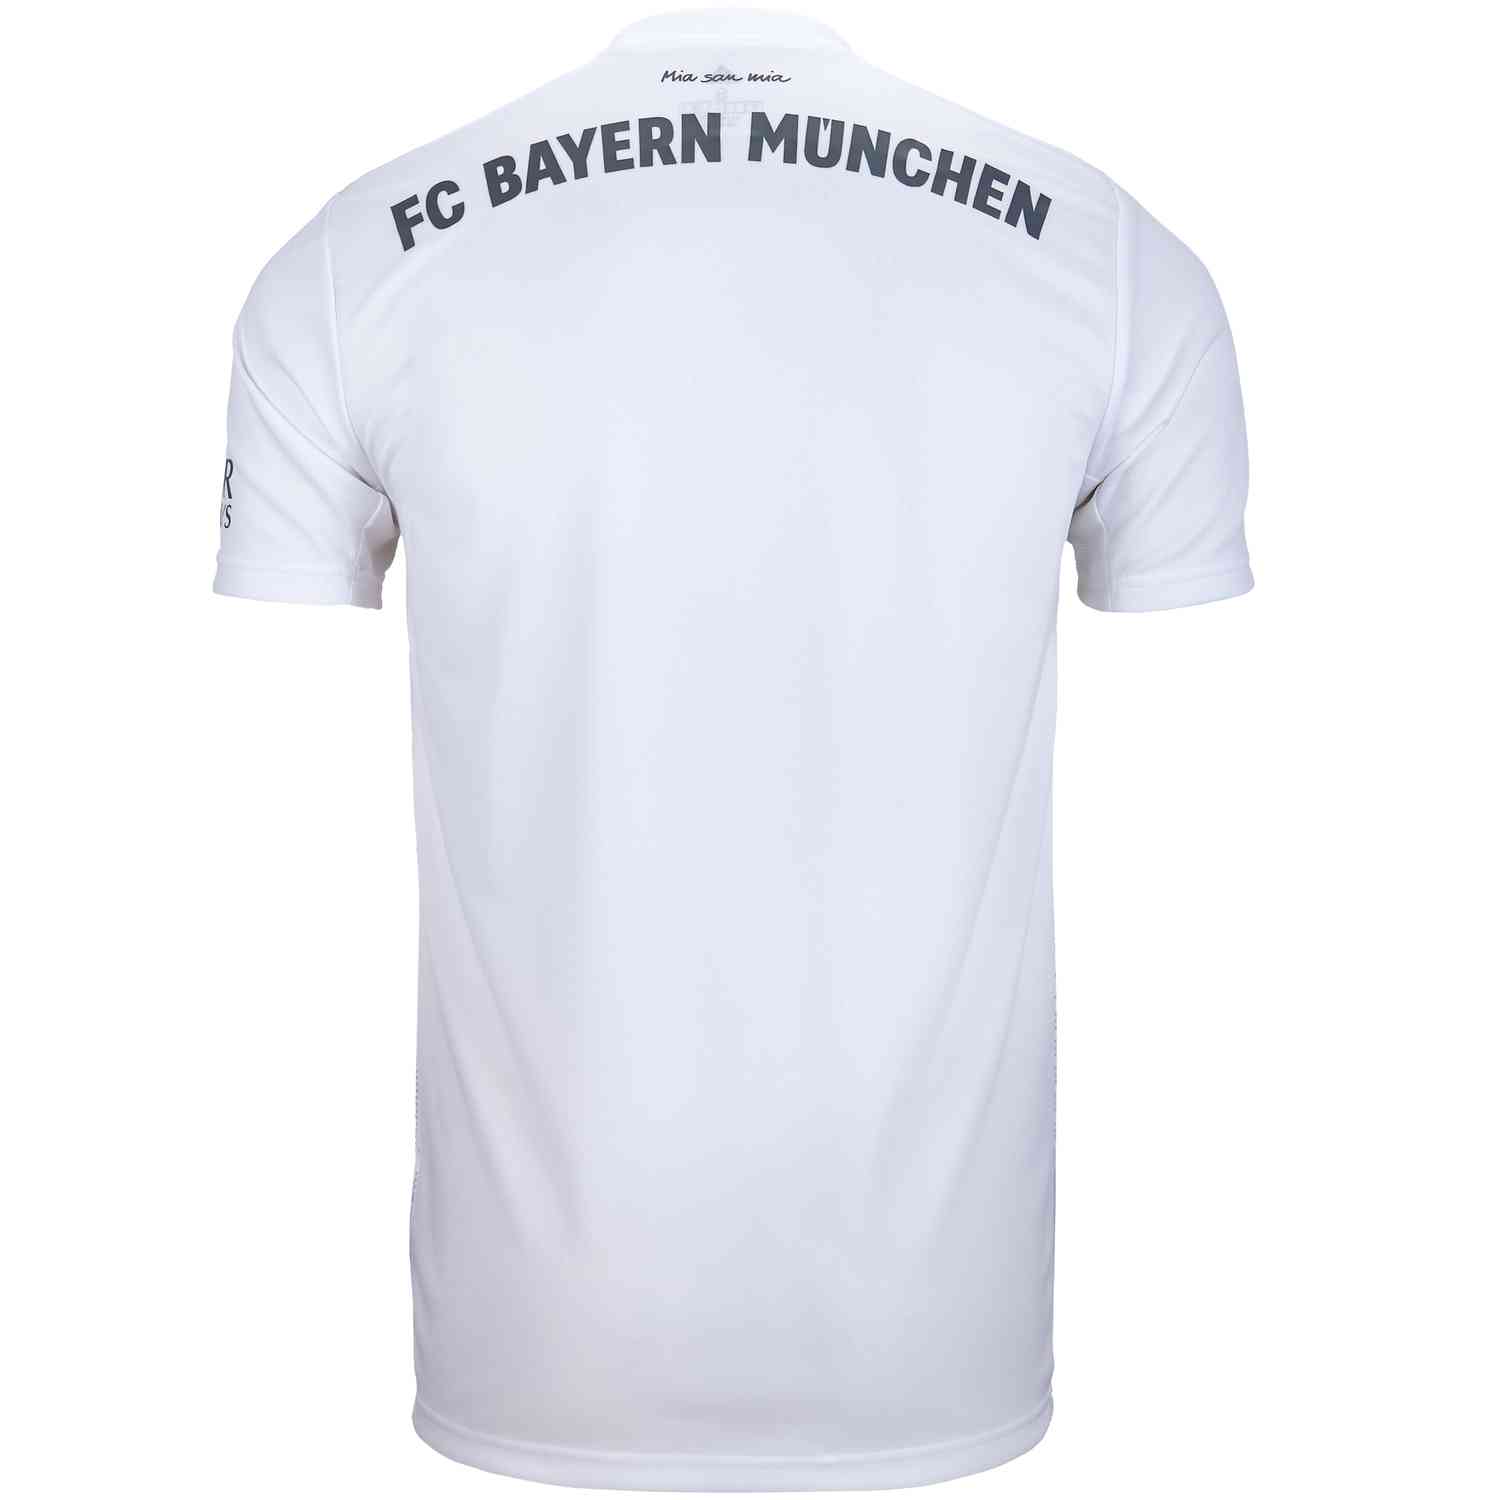 bayern munich away kit